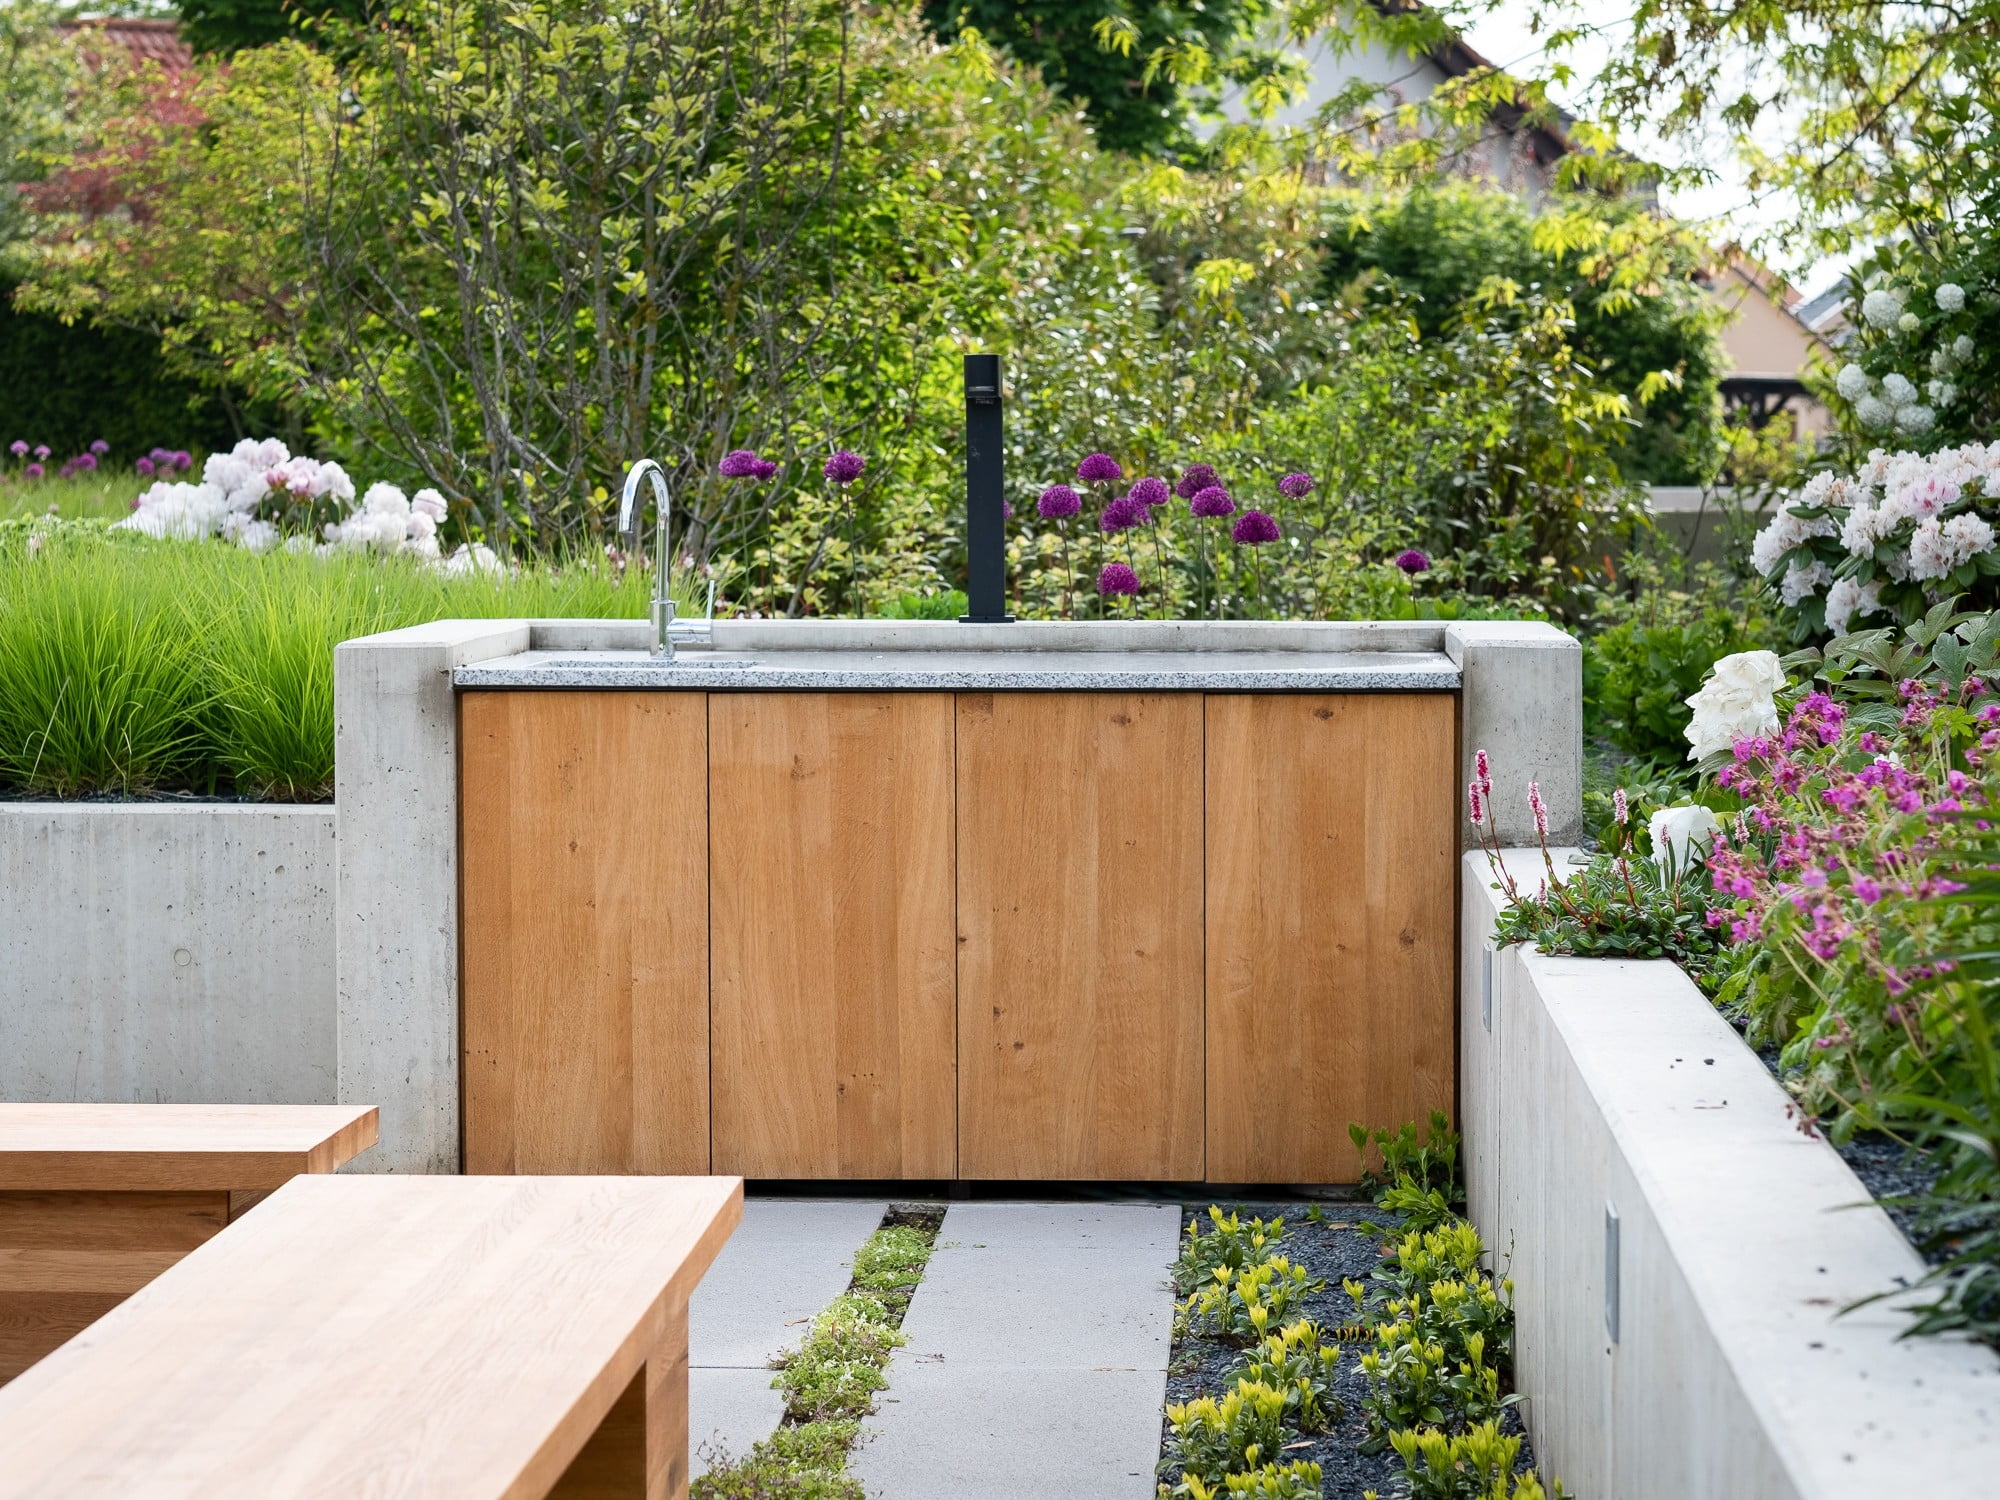 Izgradite vlastitu vanjsku kuhinju - kombinirajte materijale kao što su beton, kamen i drvo